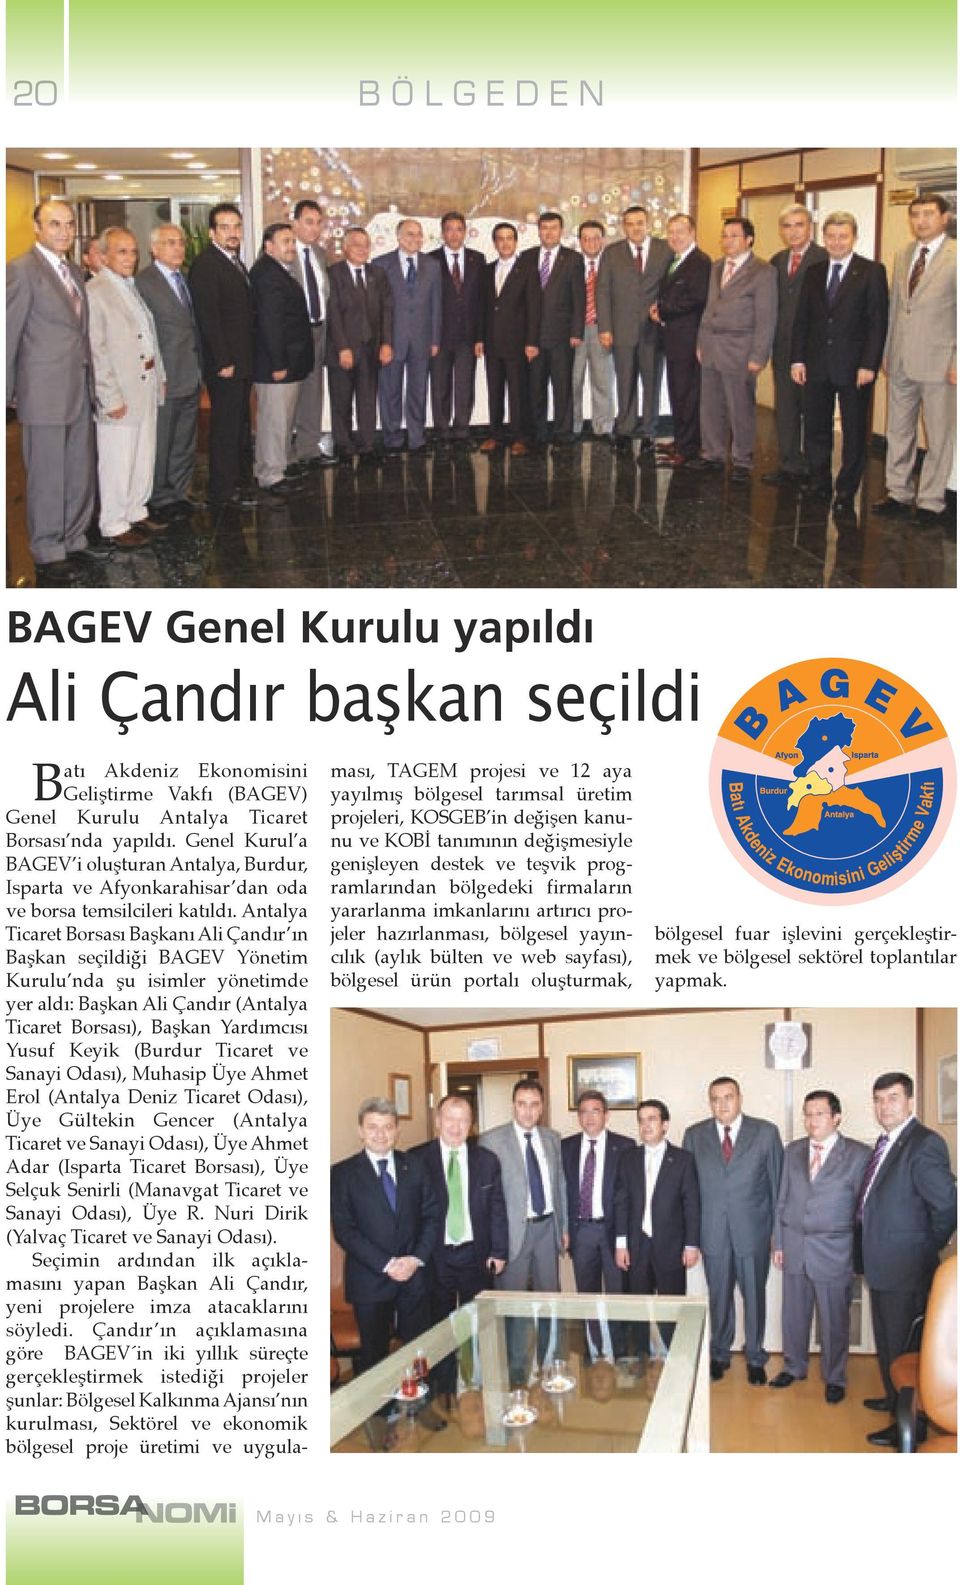 Antalya Ticaret Borsası Başkanı Ali Çandır ın Başkan seçildiği BAGEV Yönetim Kurulu nda şu isimler yönetimde yer aldı: Başkan Ali Çandır (Antalya Ticaret Borsası), Başkan Yardımcısı Yusuf Keyik